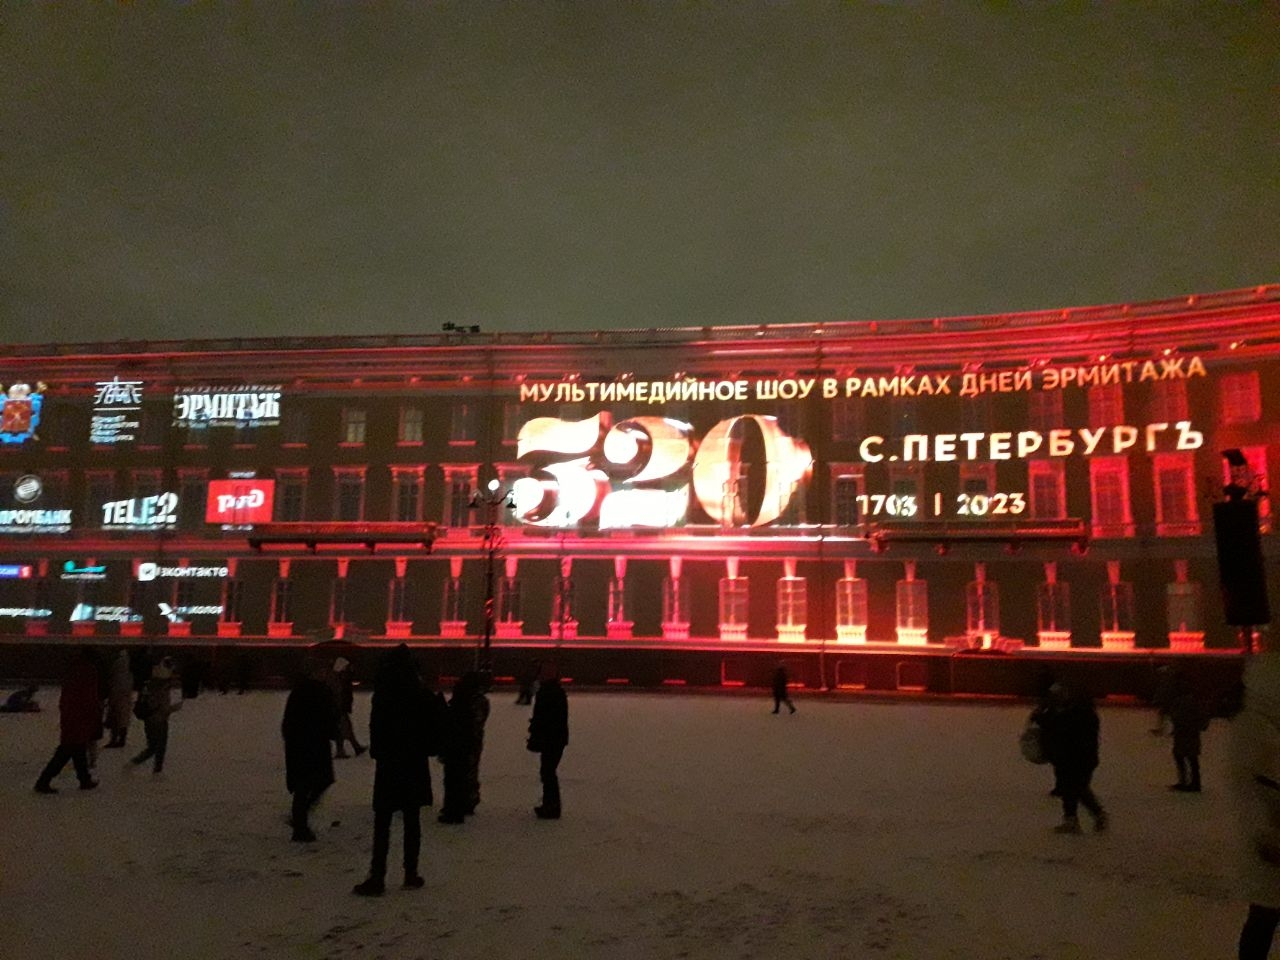 Дворцовая площадь и Александровская колонна Санкт-Петербург, Россия